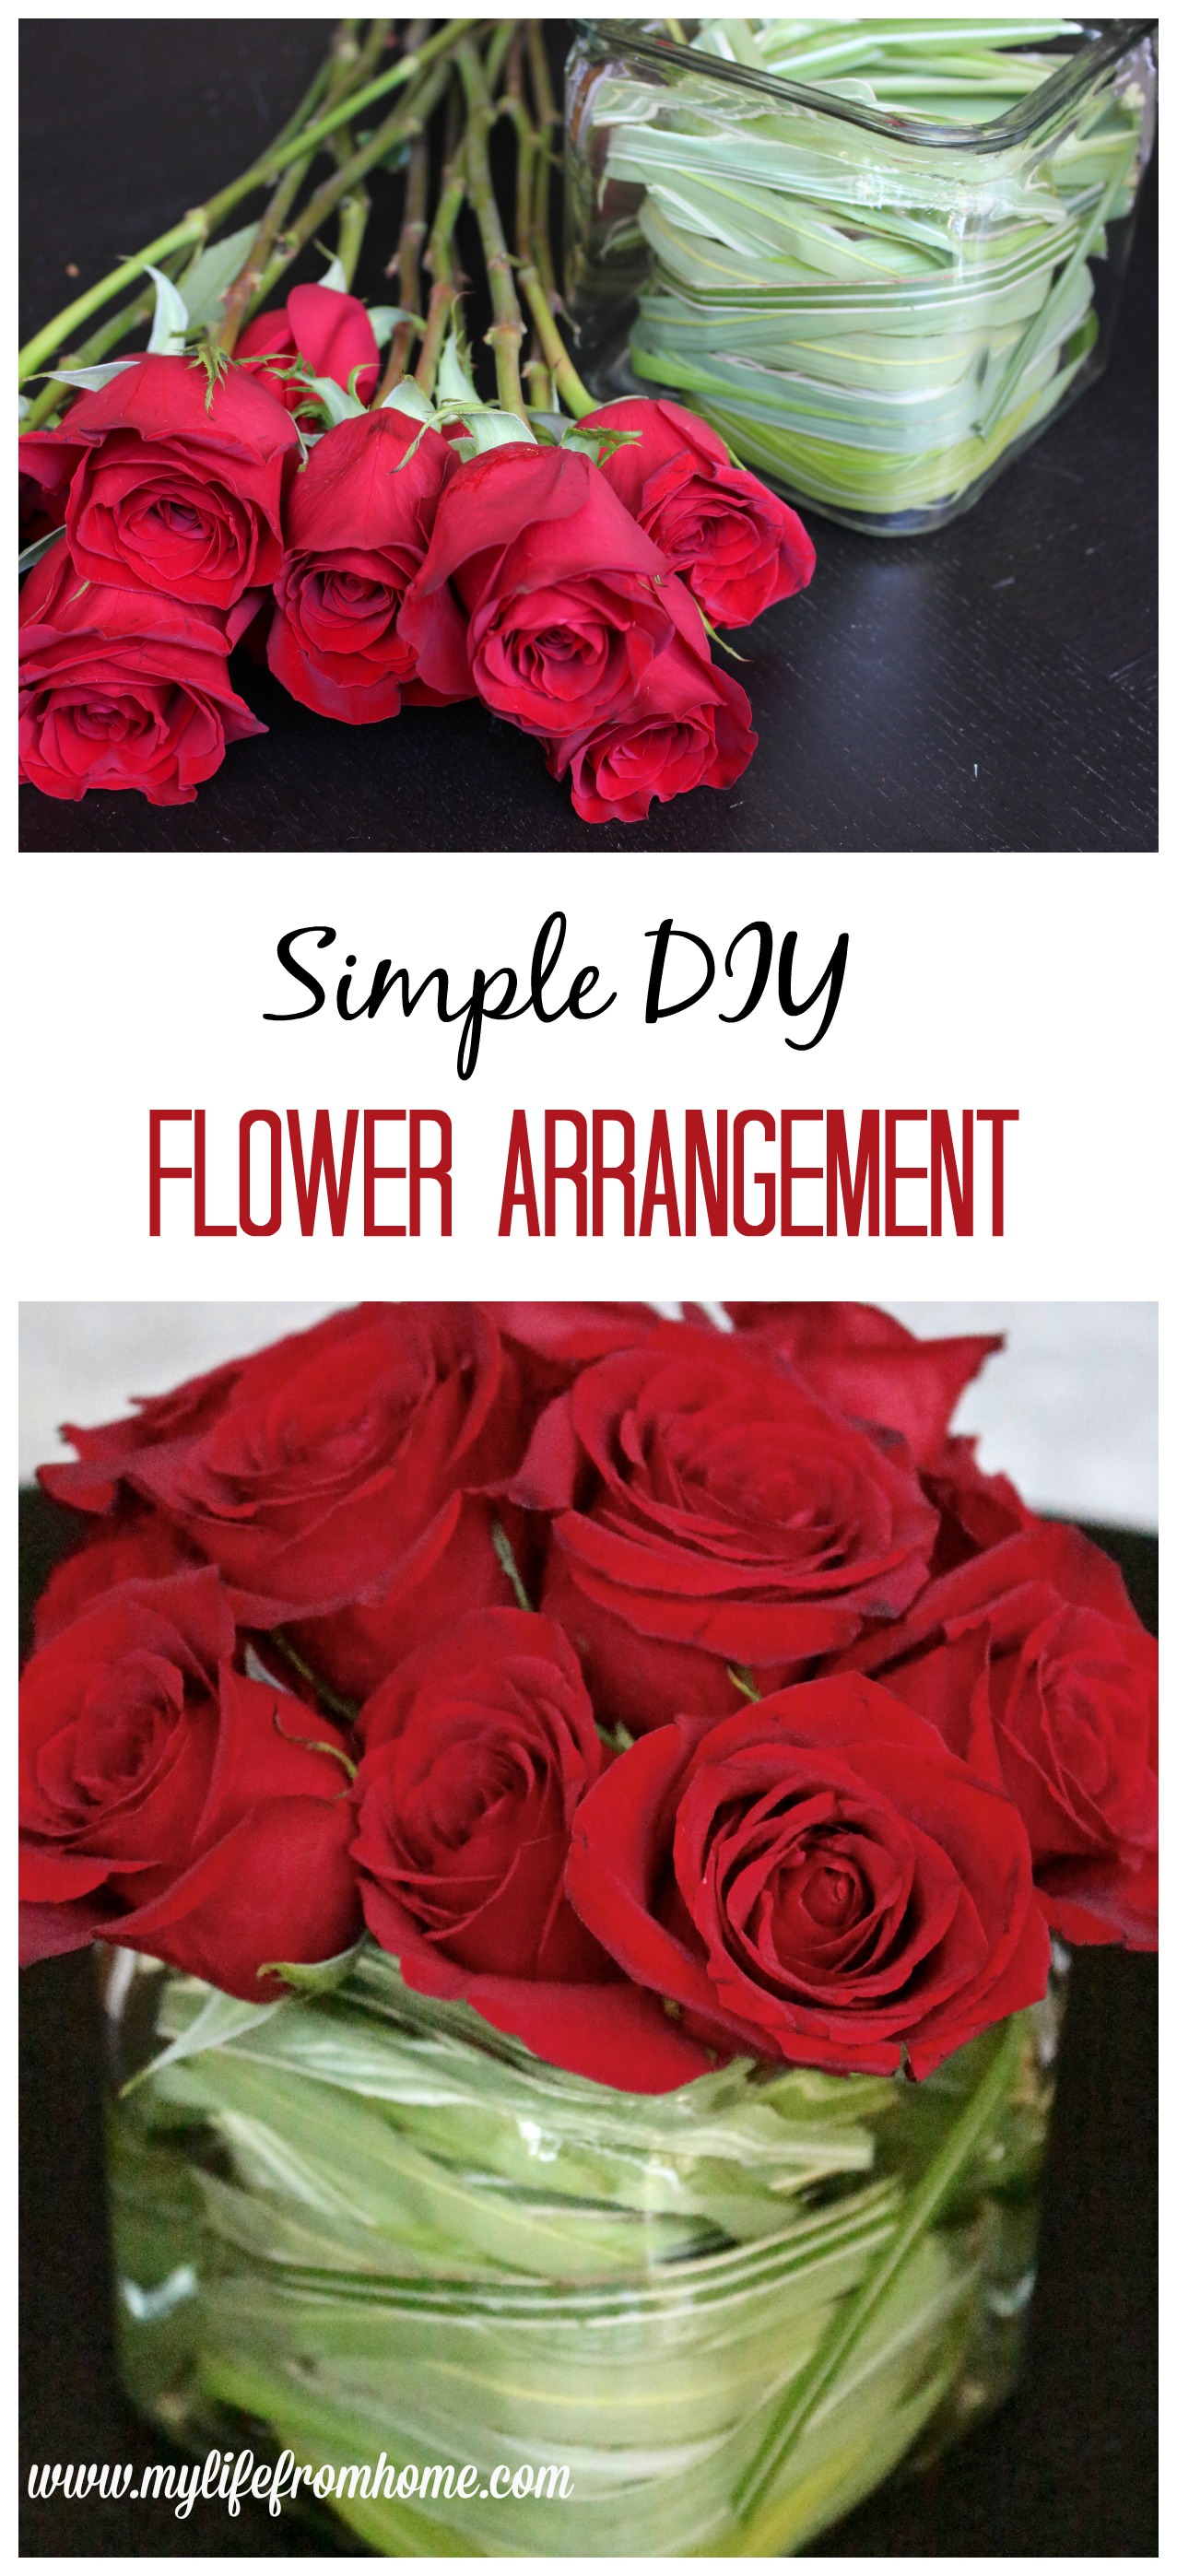 Simple DIY Flower Arrangement roses flower arranging DIY flower arrangement hand bouquet grocery store flowers